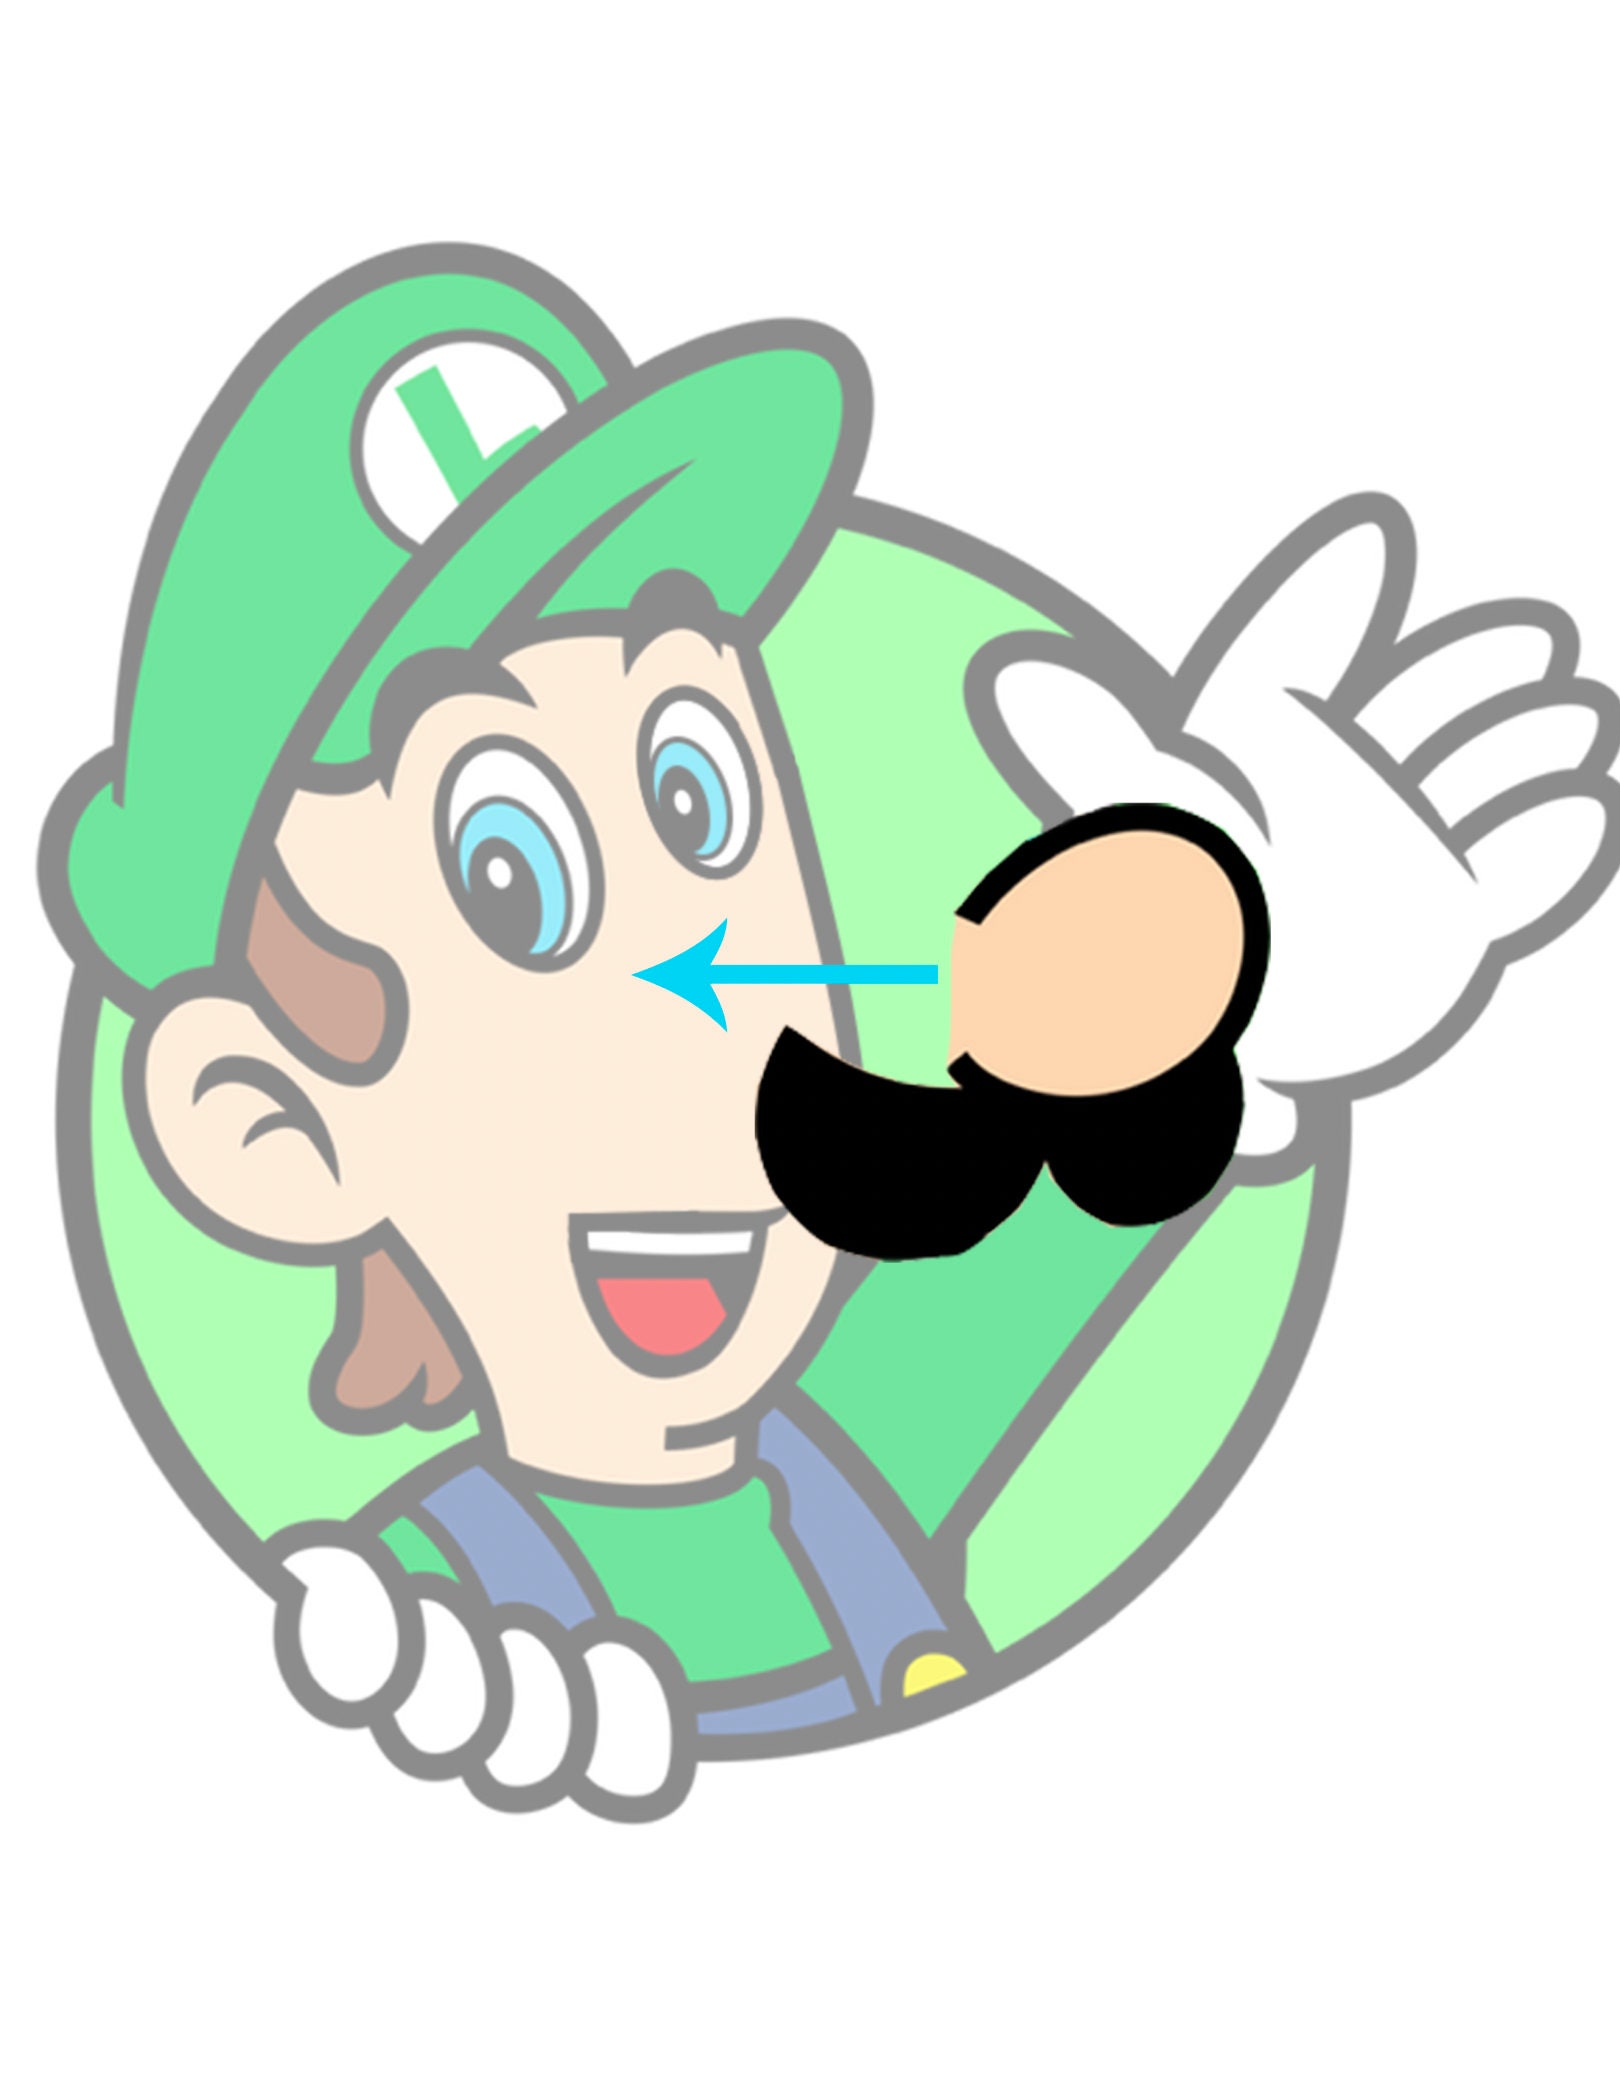 Luigi Png, Mario Png, Luigi Head Png, Super Mario Png, Mario Inspire ...